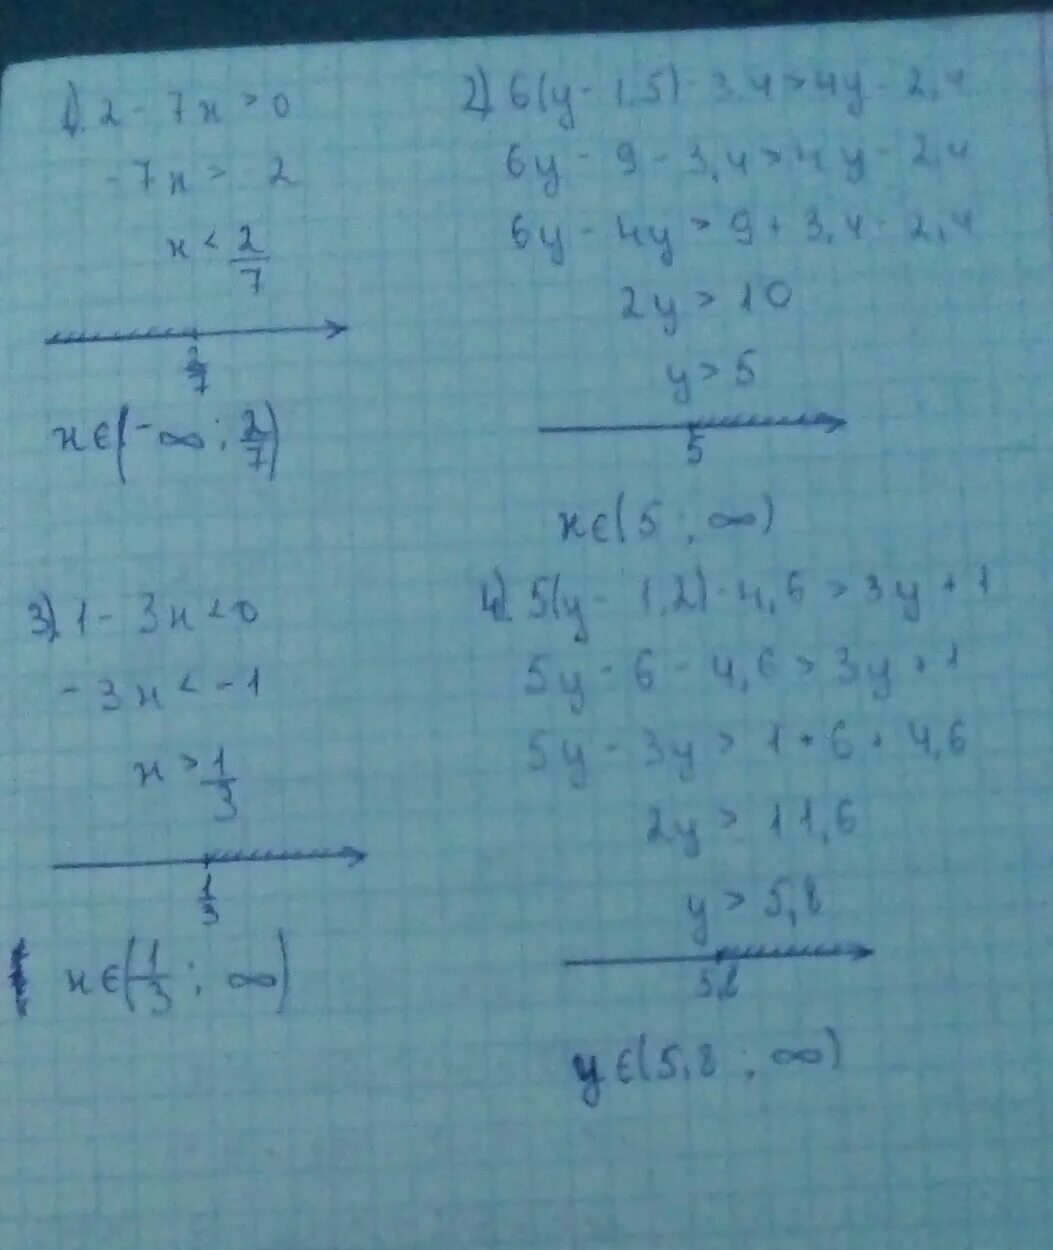 X 4 2 y 5 3. Y-5/4 <2y+3. 4у+1/2<у-4 неравенство. Решение -2(1,6x-y)+ 0,6(2x-1,3y). Система неравенства 1x +1y= 1 2 3x-y=3. Решить неравенство (x-1)^2+y 2.